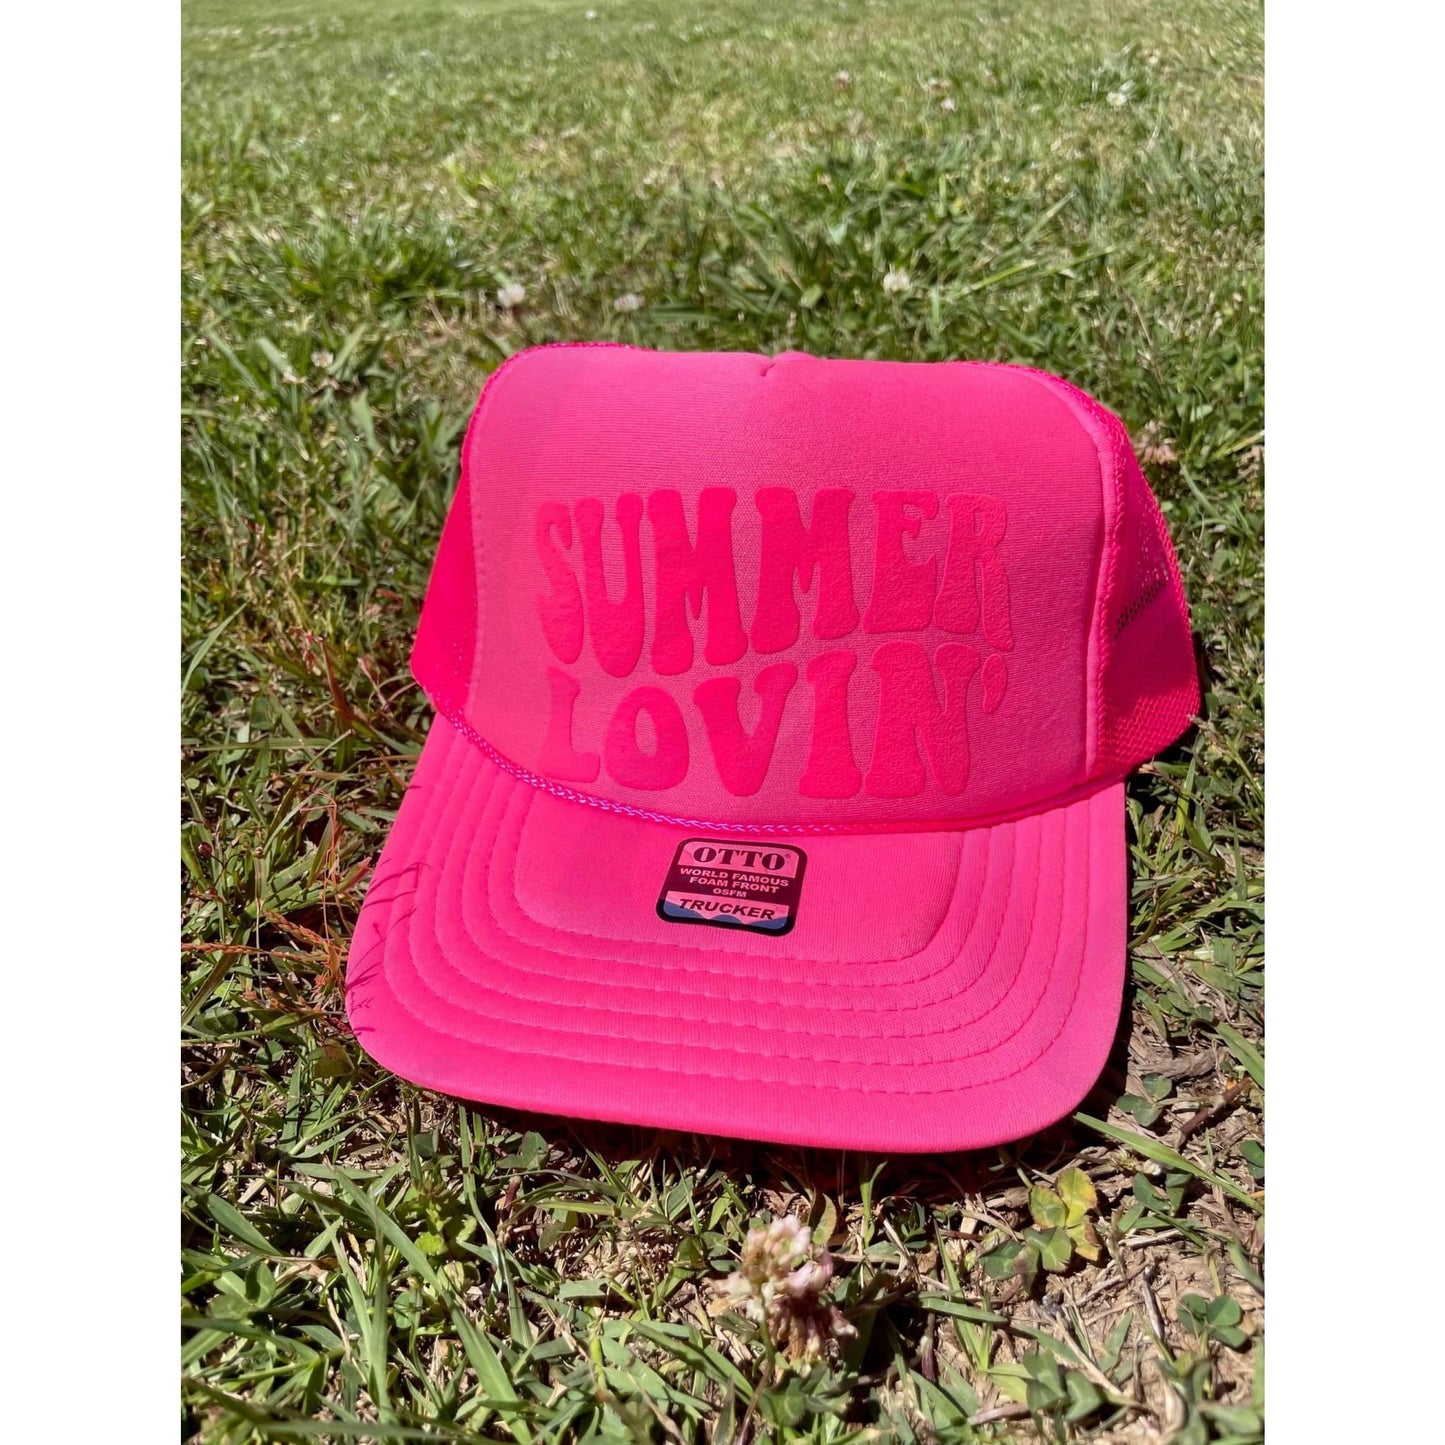 Summer Lovin’ Neon Pink Trucker Hat - Apparel & Accessories